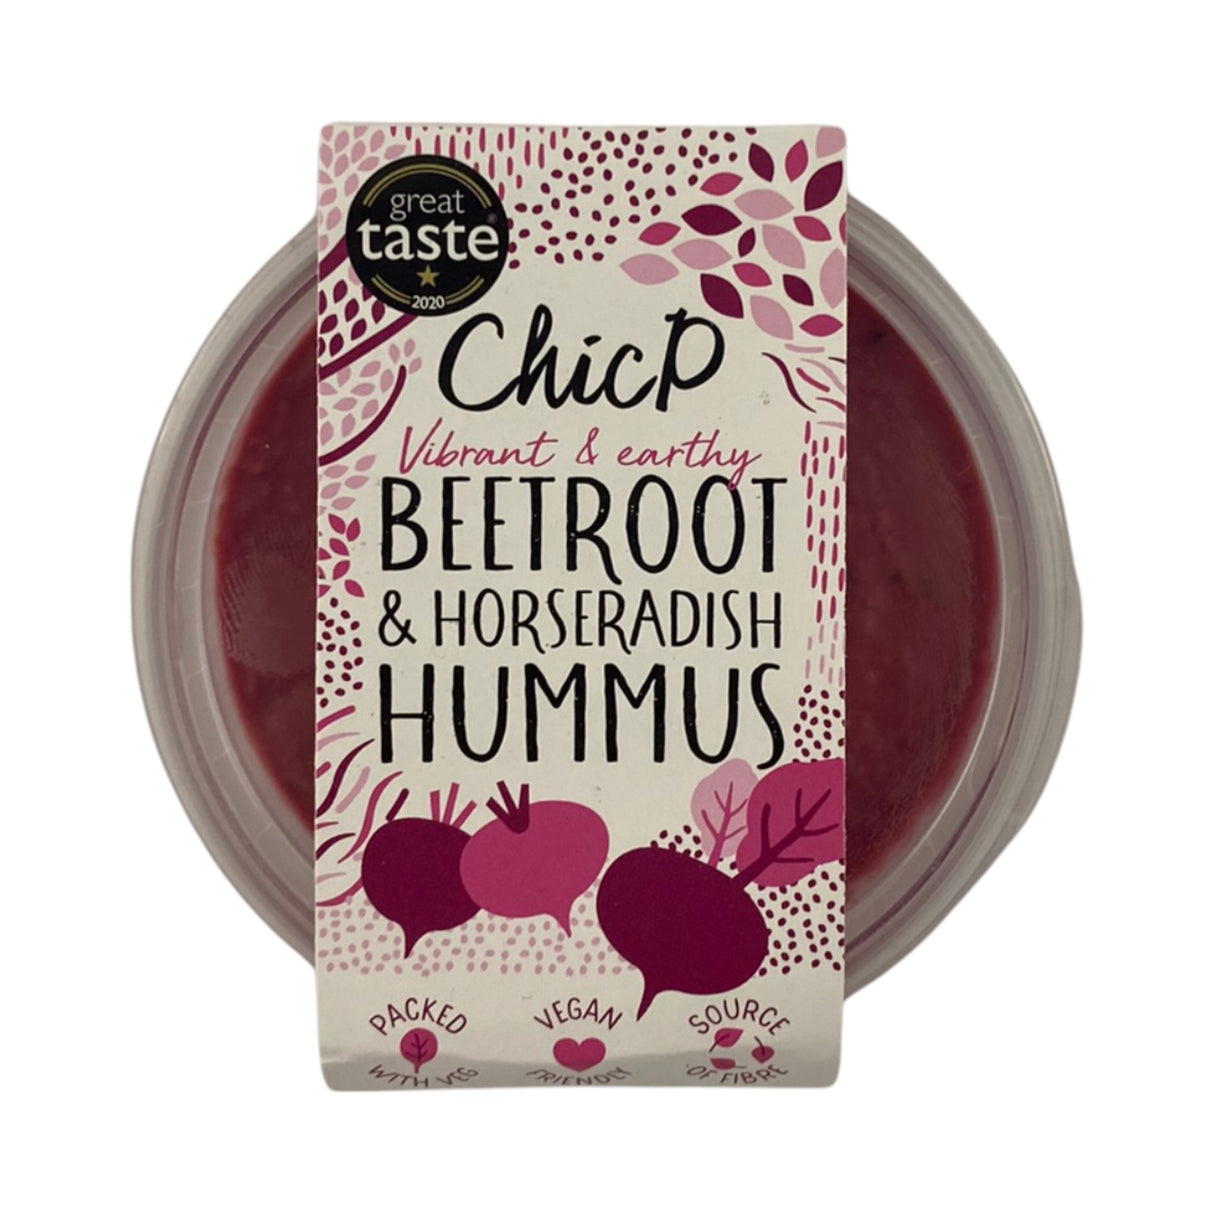 ChicP - Beetroot & Horseradish Hummus 150g